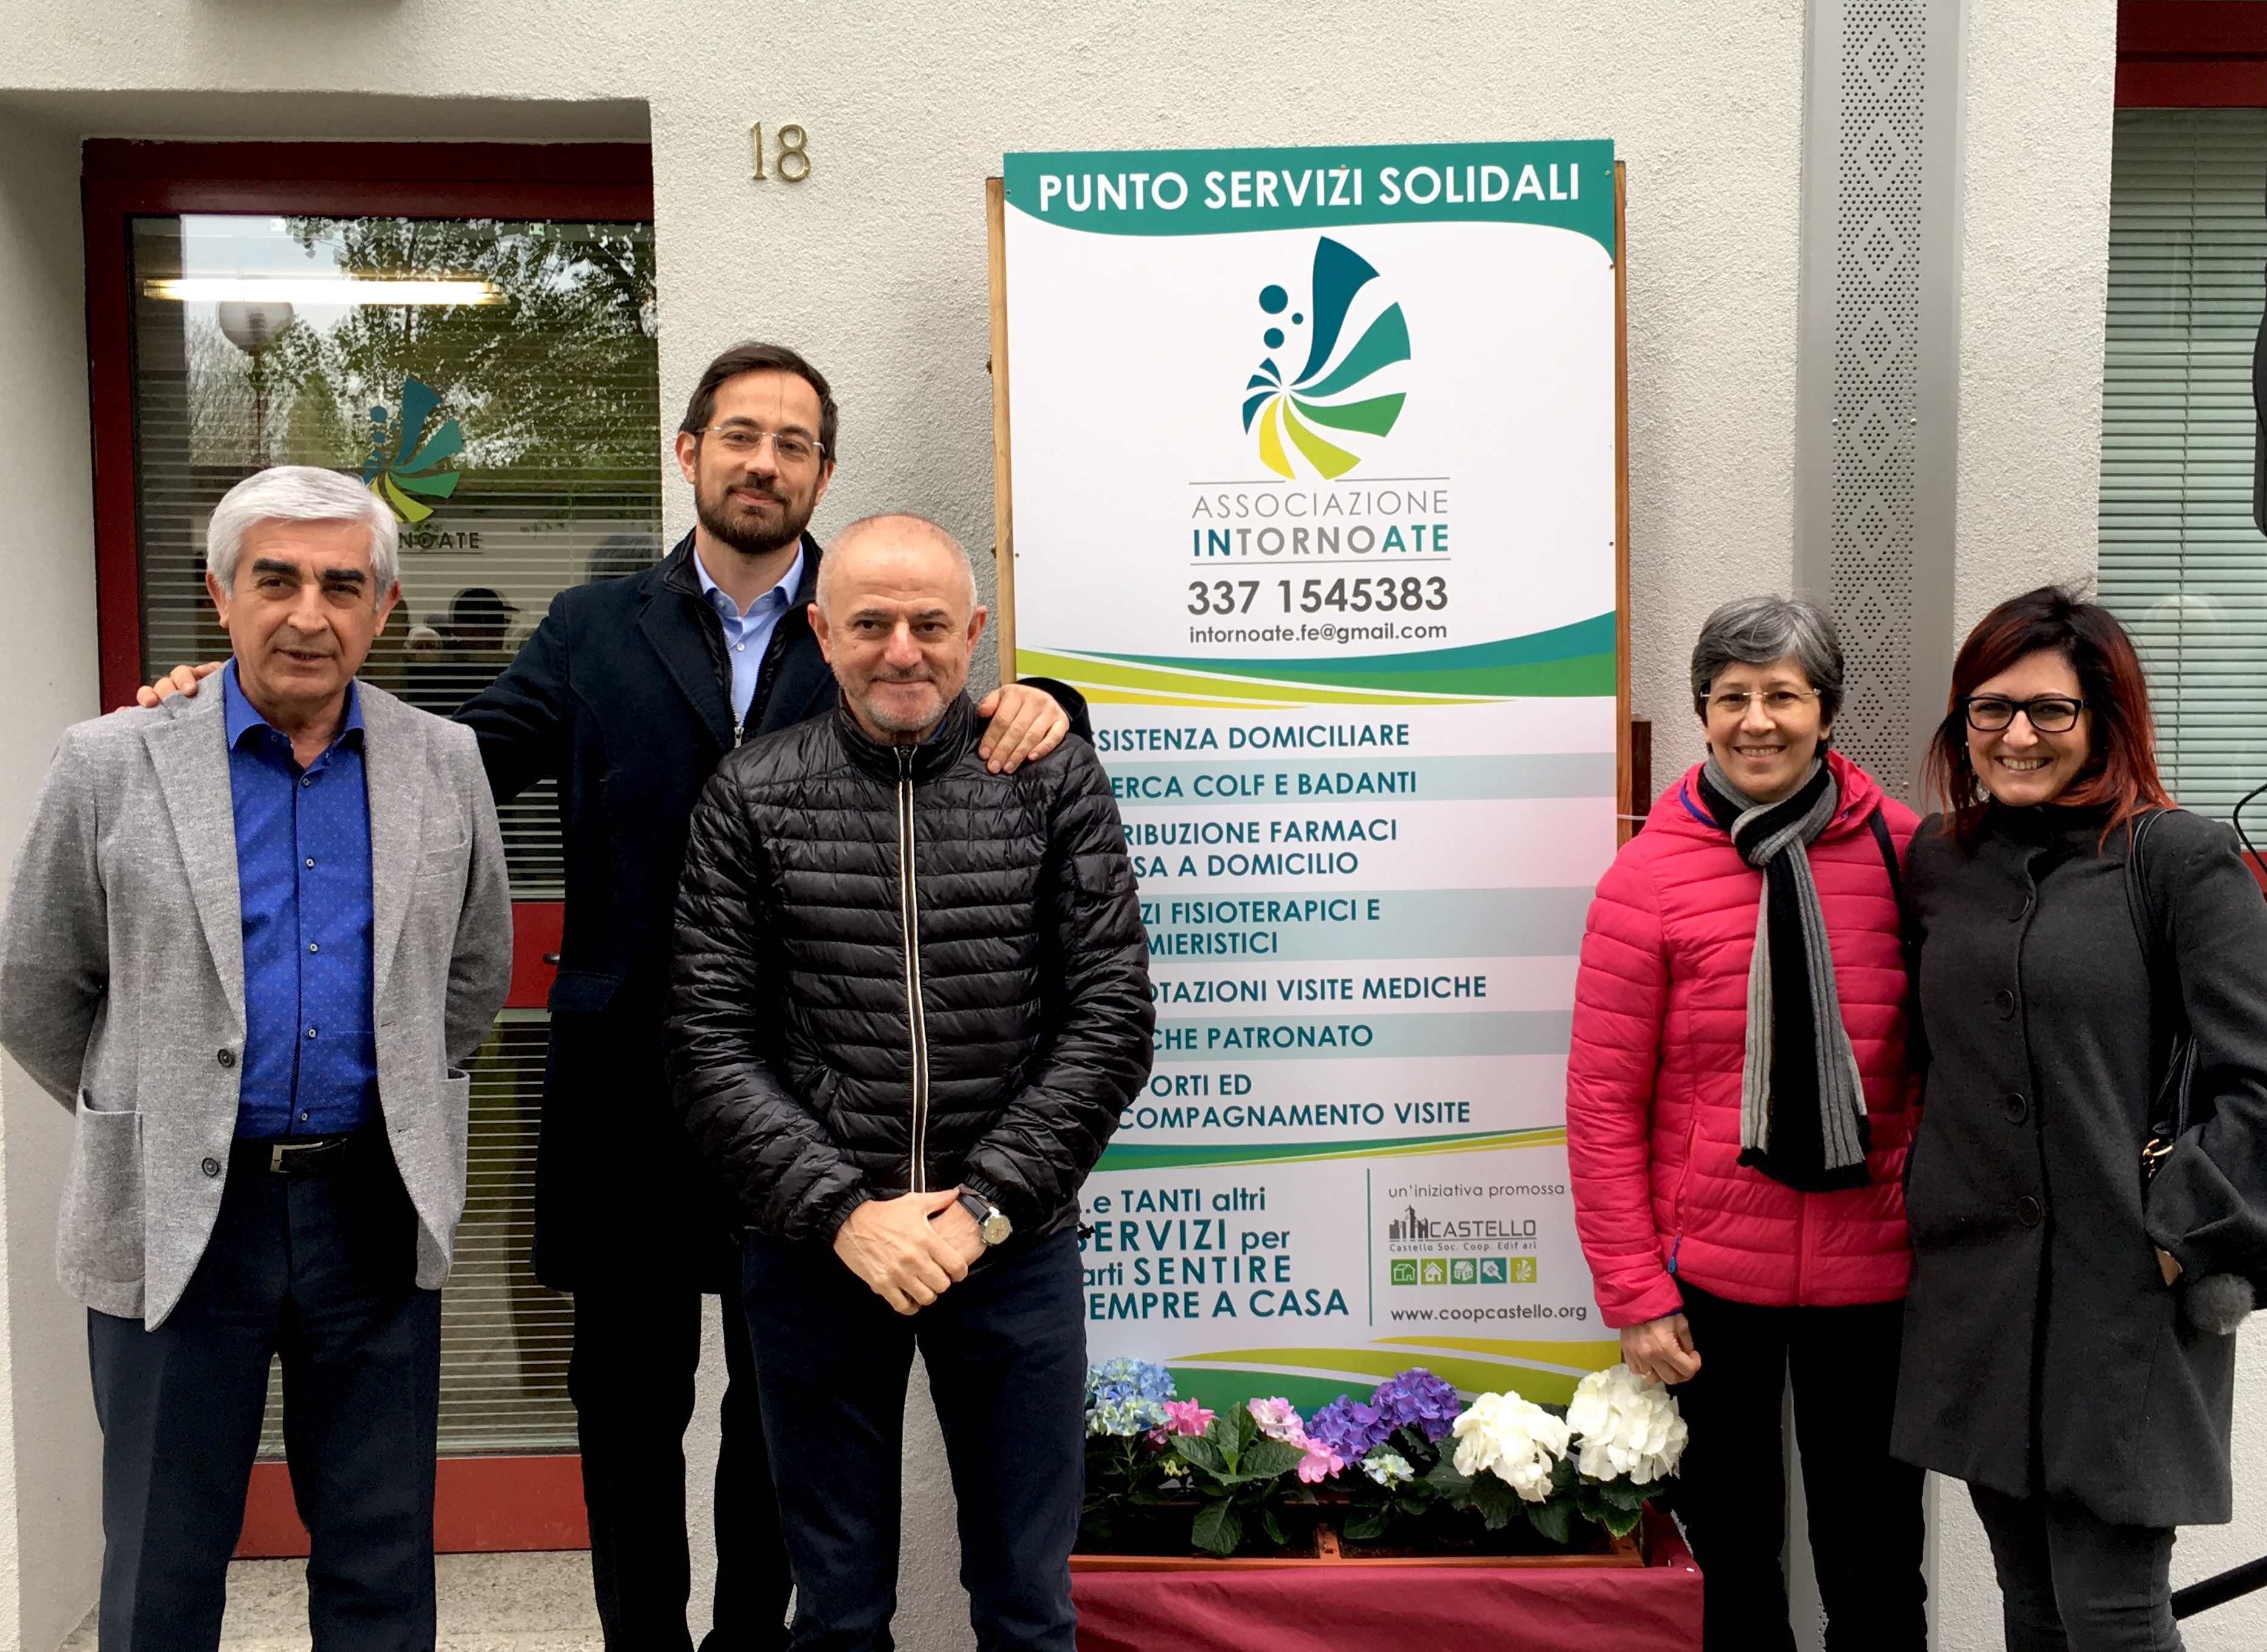 Punto Servizi Solidali: inaugura lo Sportello di servizi di Welfare e Housing sociale della cooperativa di abitanti Castello